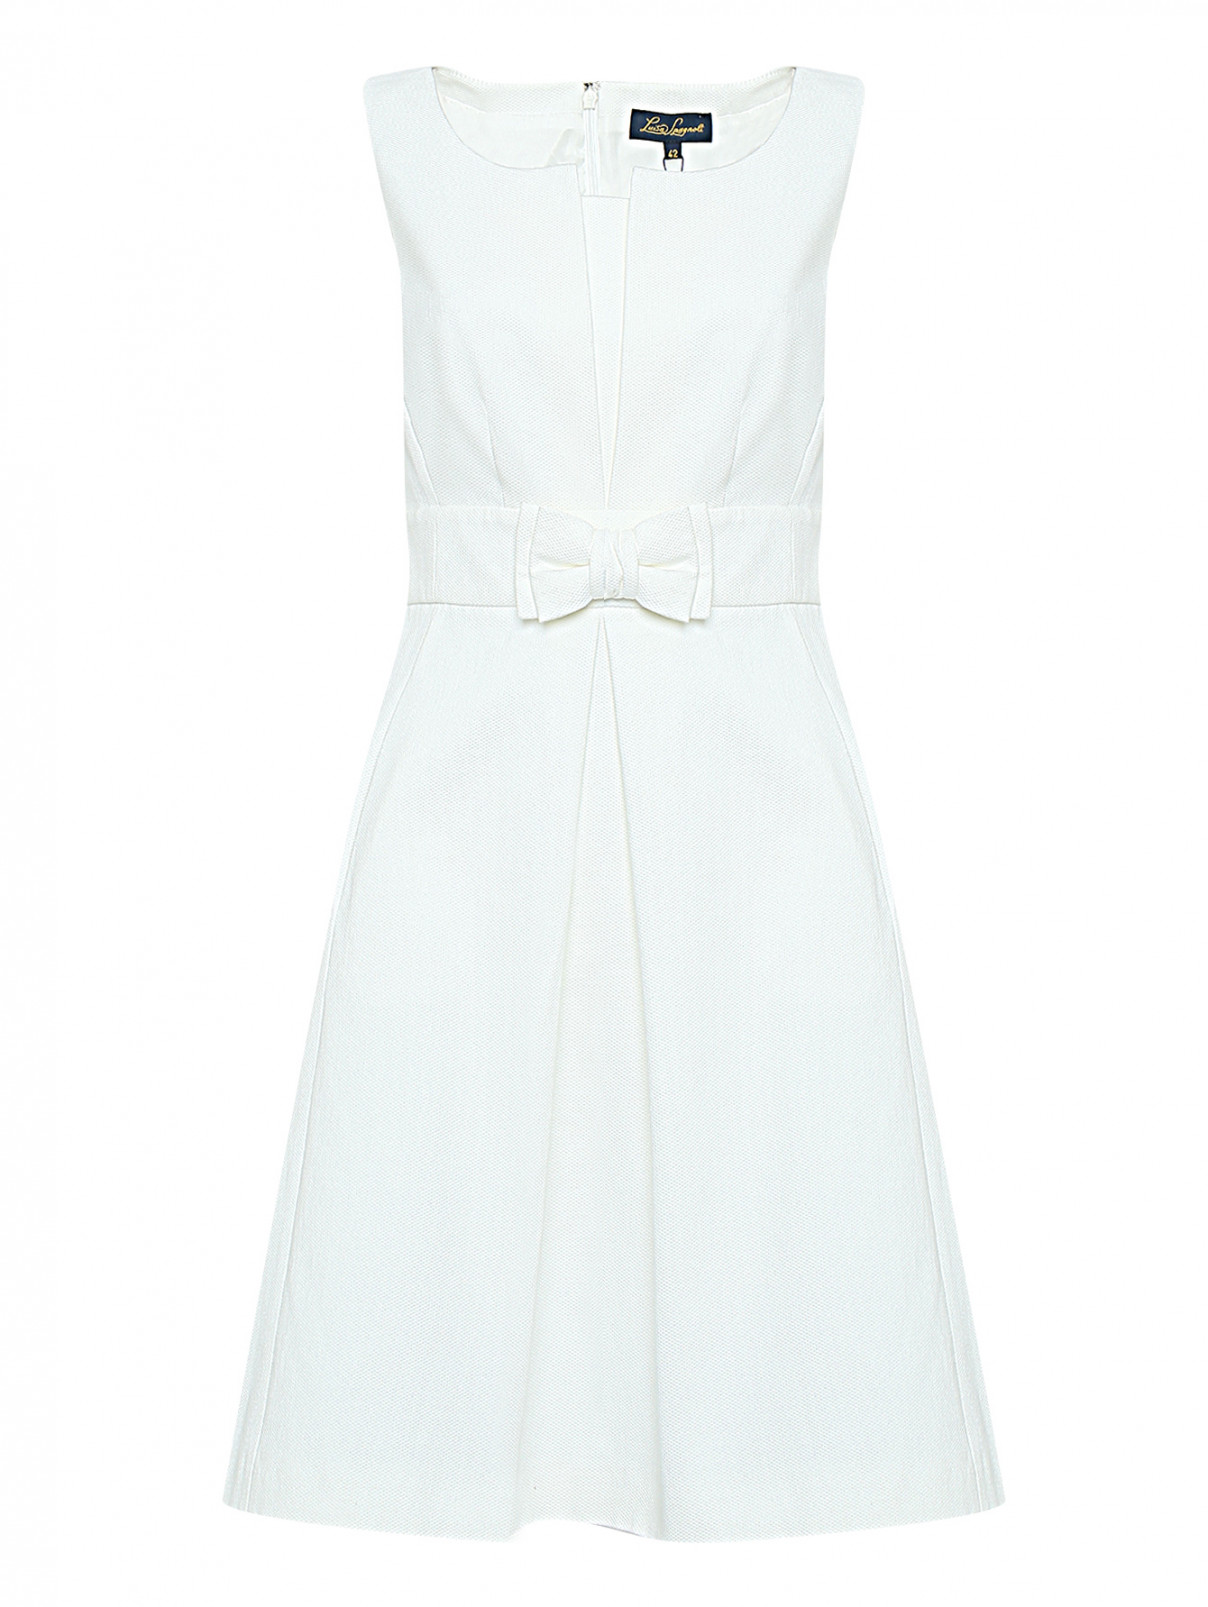 Платье из хлопка с бантом Luisa Spagnoli  –  Общий вид  – Цвет:  Белый